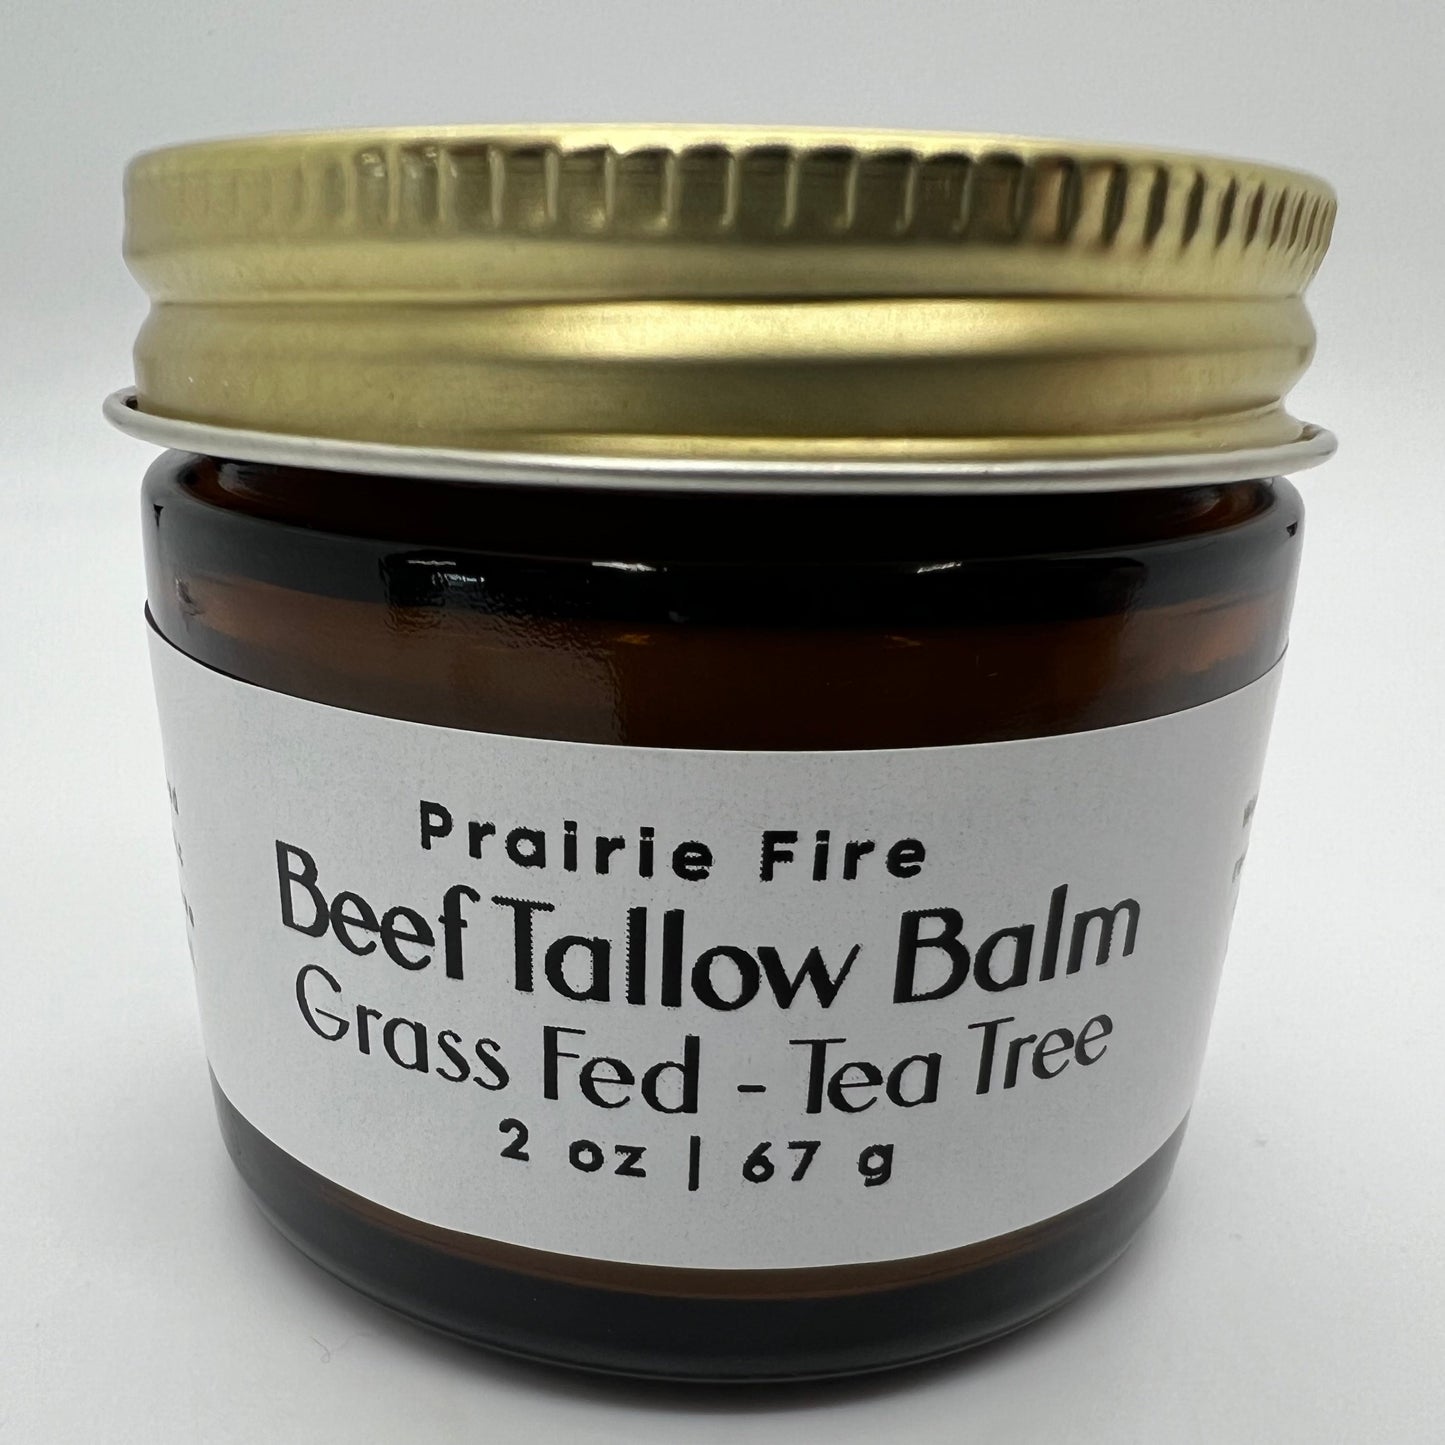 Beef Tallow Balm - 2 oz - Organic Grass Fed - Body Butter - Prairie Fire Kansas Native Pasture